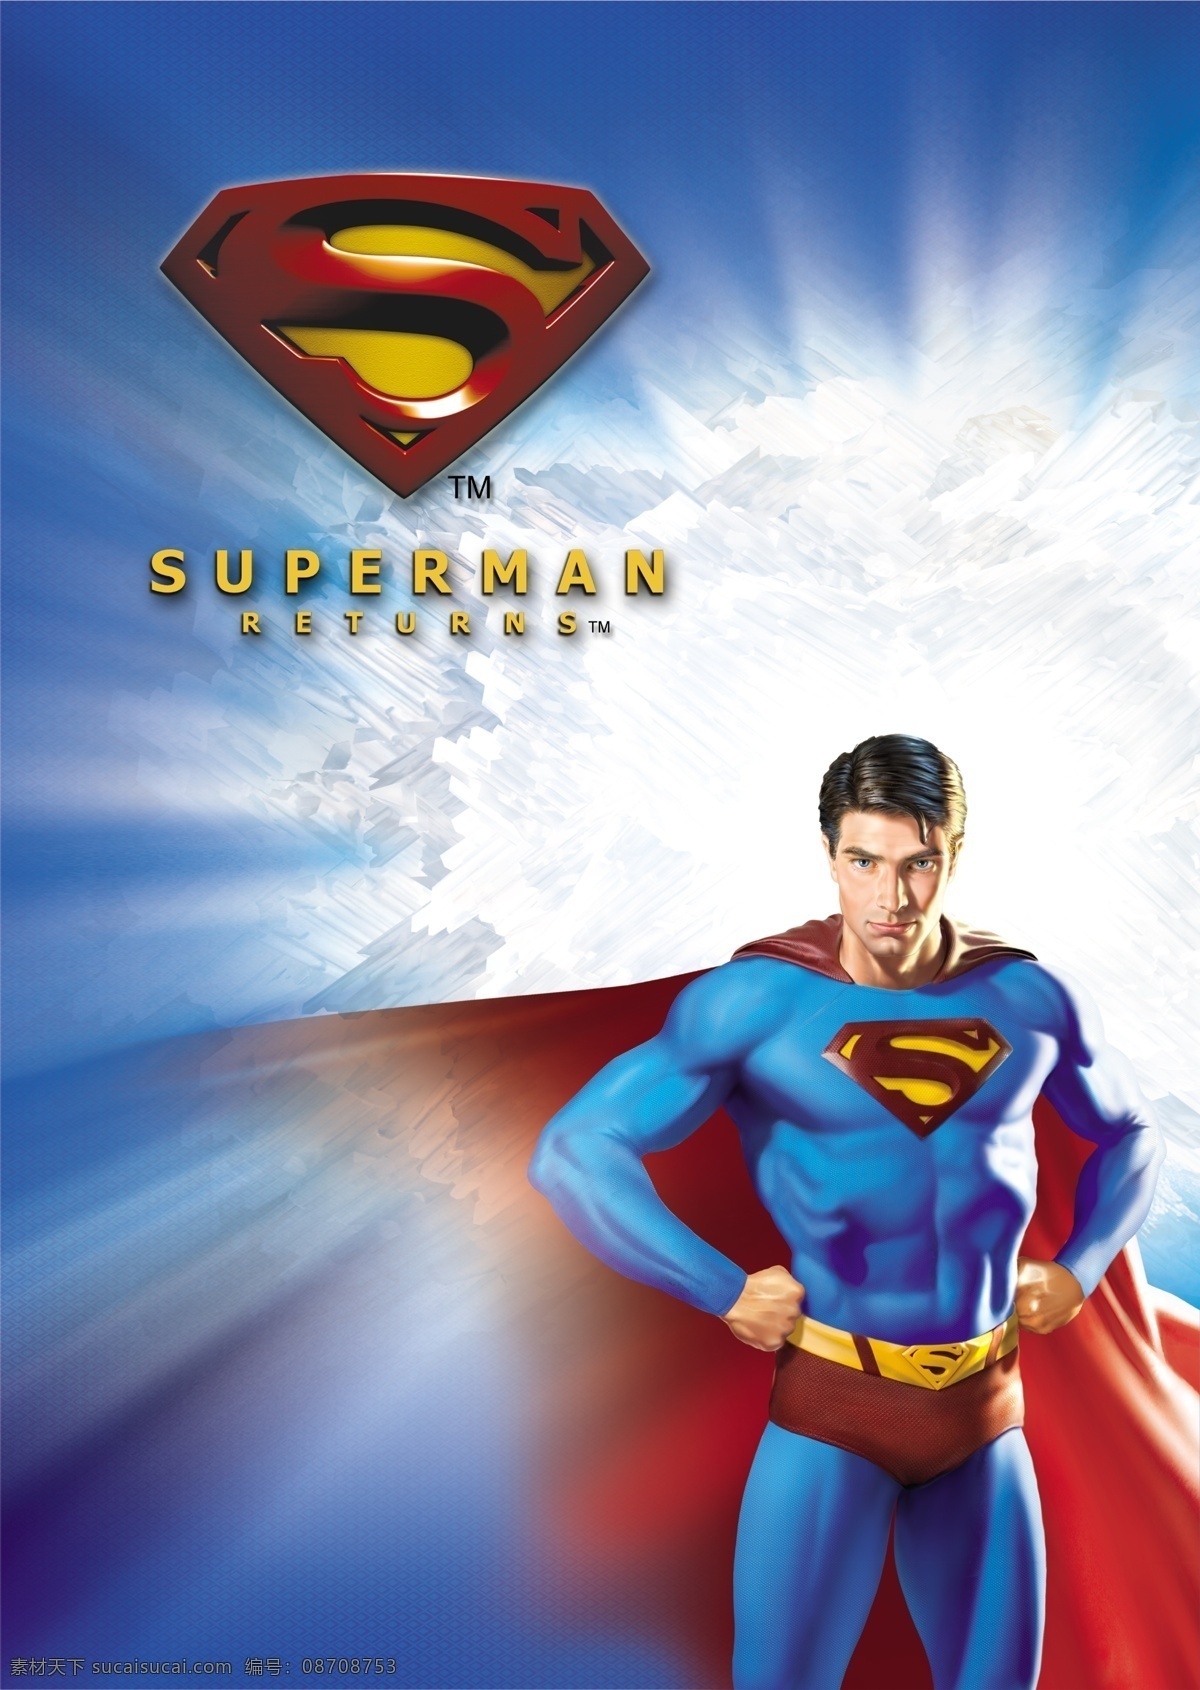 超人 美国漫画英雄 superman 人物 分层 源文件